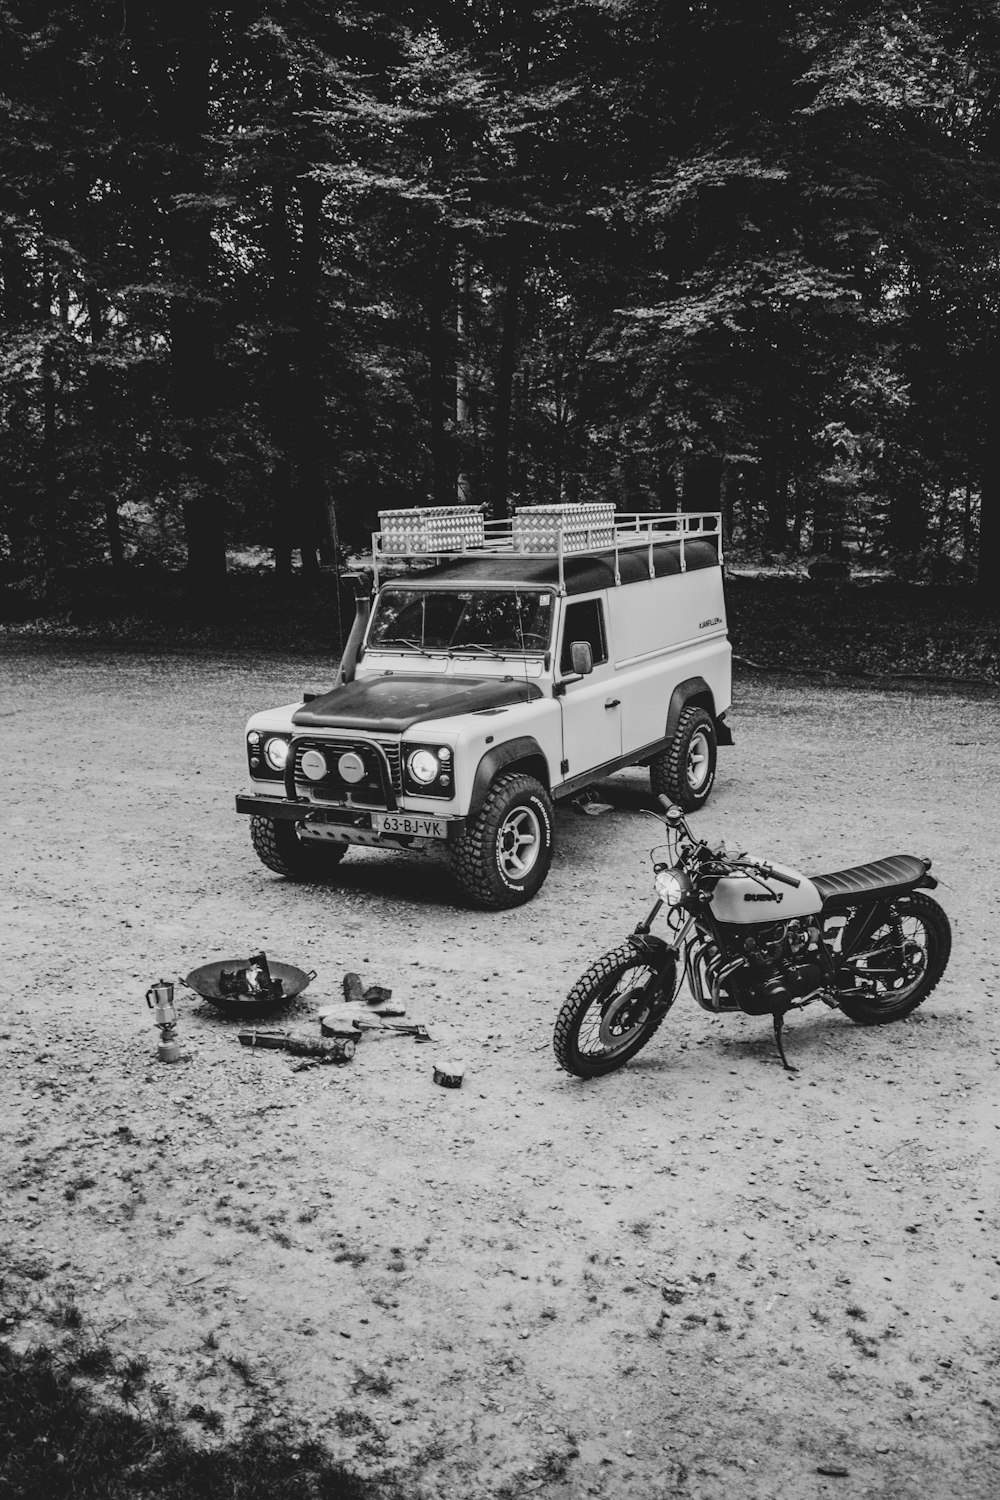 fotografia in scala di grigi di SUV e motocicletta